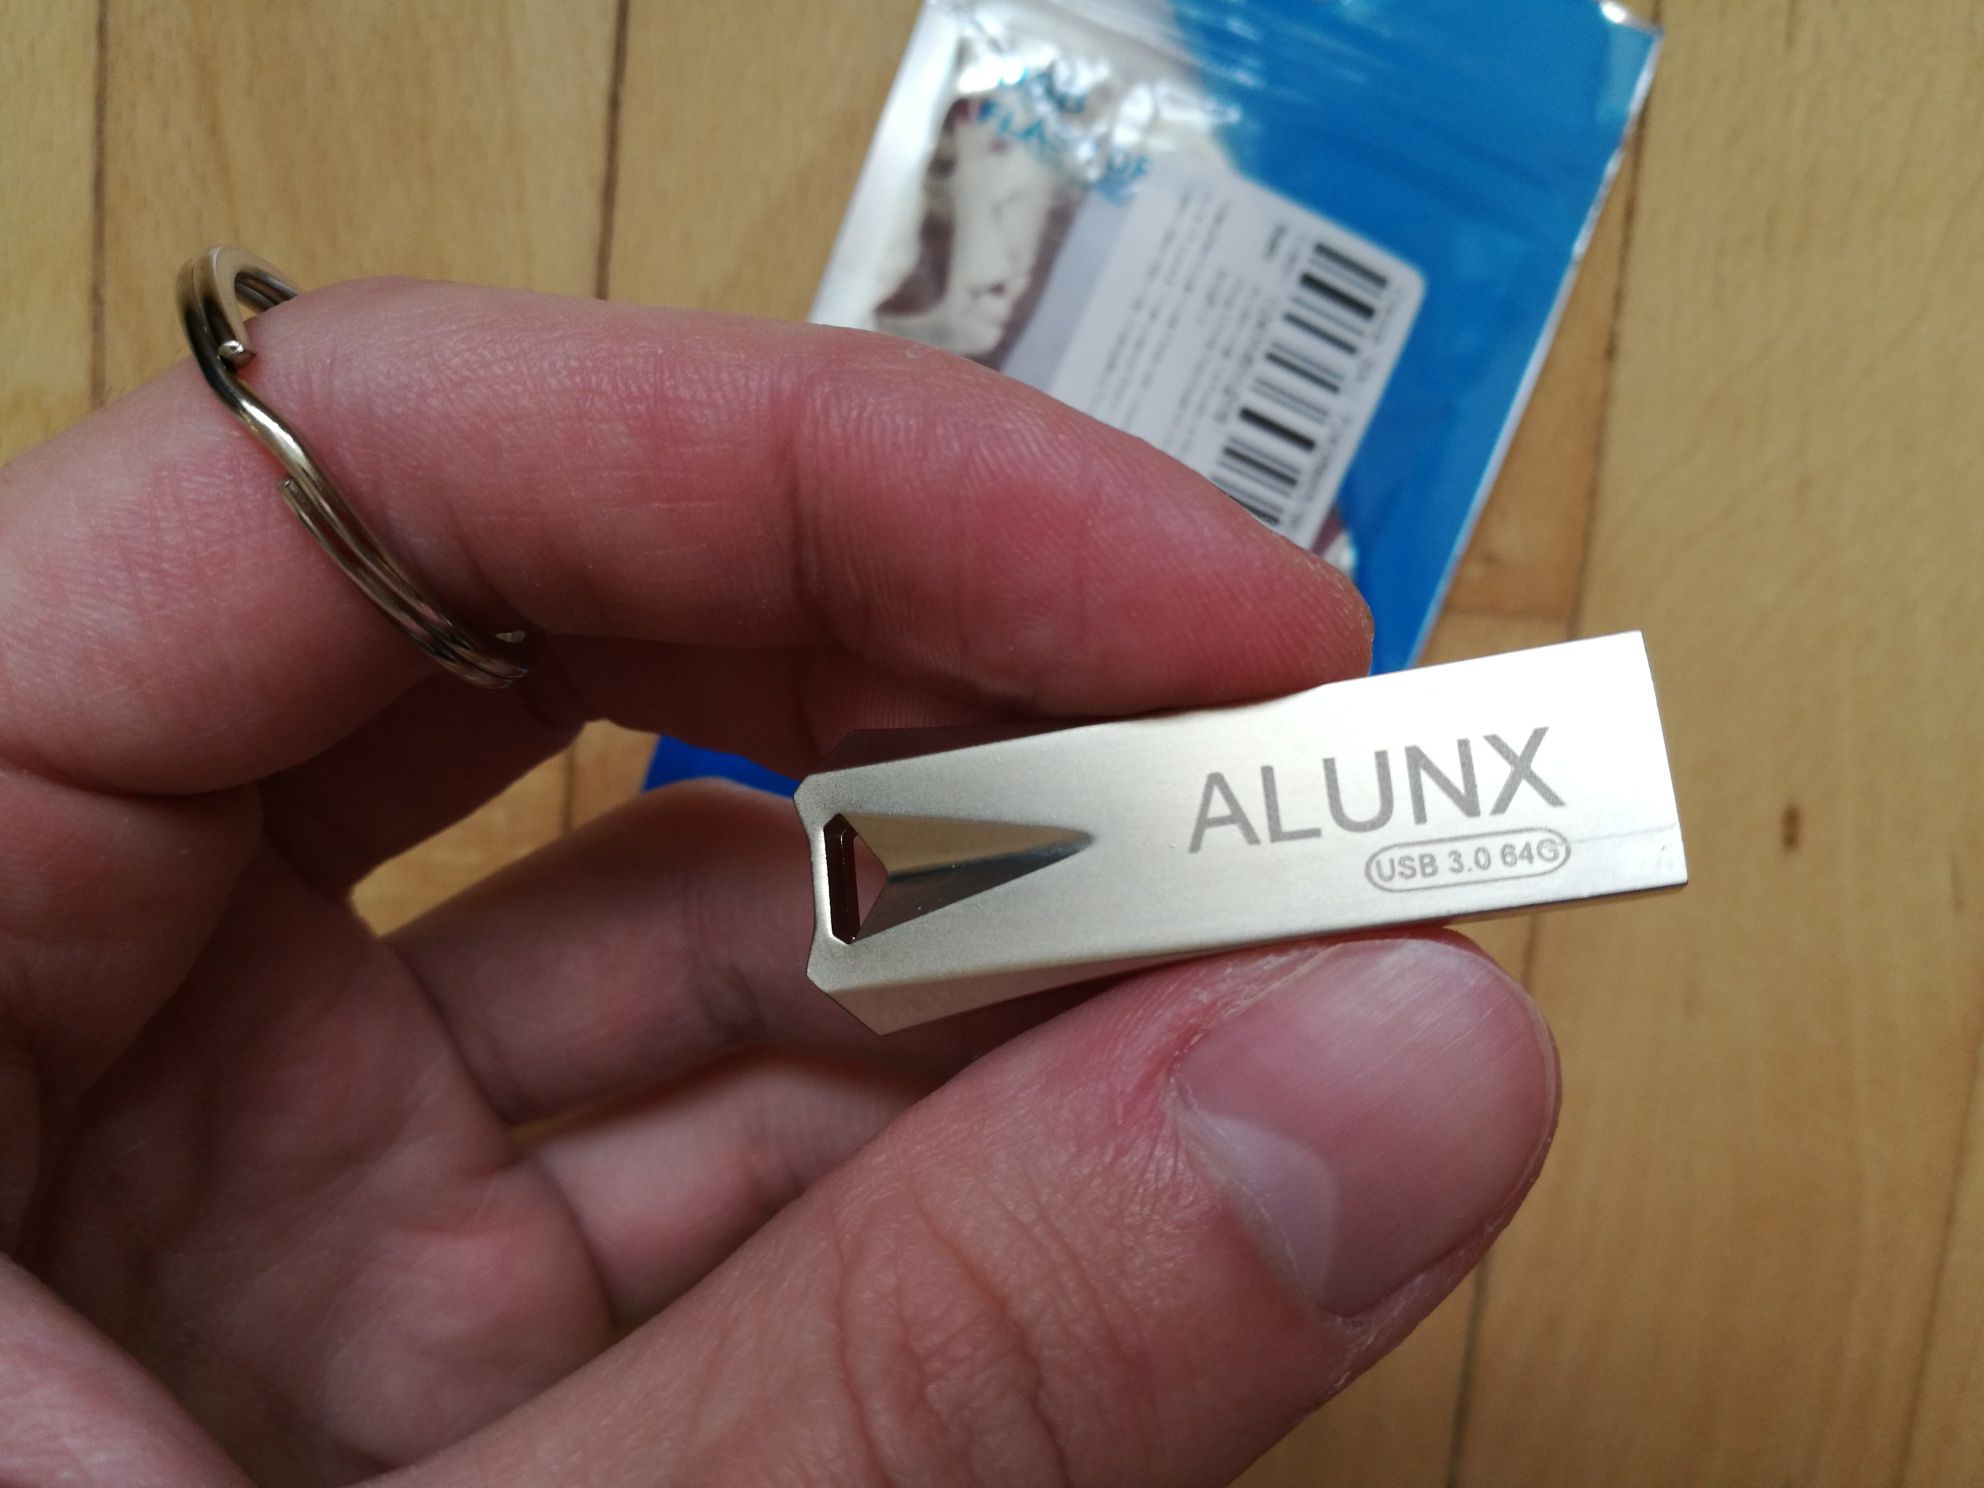 НОВА Флешка ALUNX USB 3.0 64Gb алюмінієвий корпус